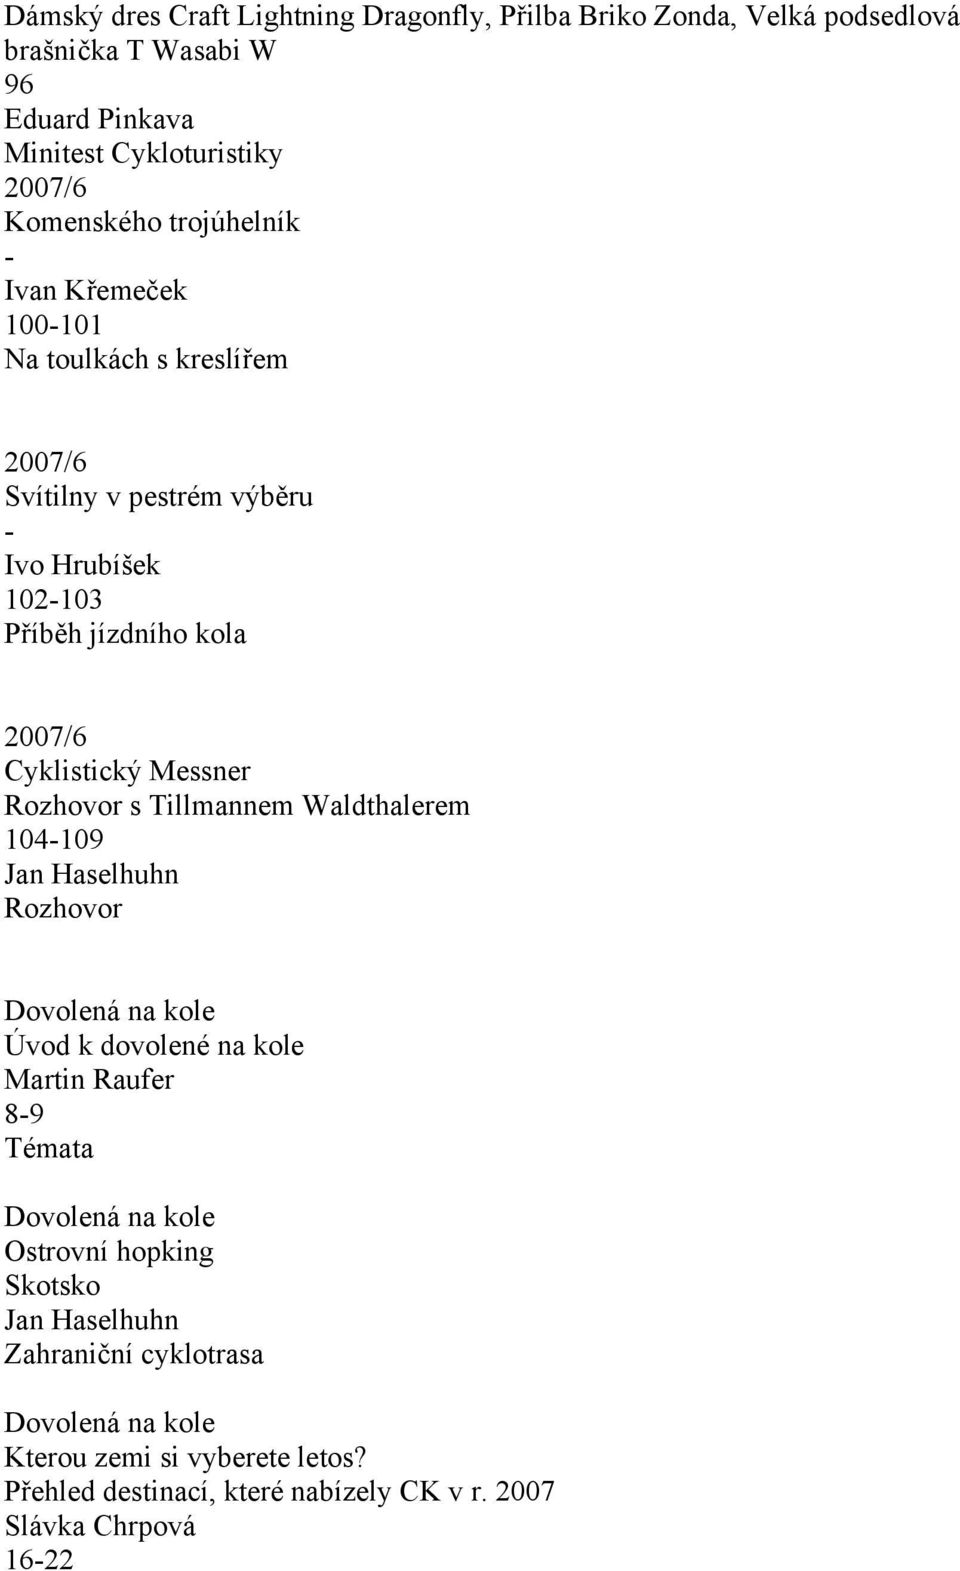 kola Cyklistický Messner Rozhovor s Tillmannem Waldthalerem 104-109 Jan Haselhuhn Rozhovor Úvod k dovolené na kole Martin Raufer 8-9 Témata